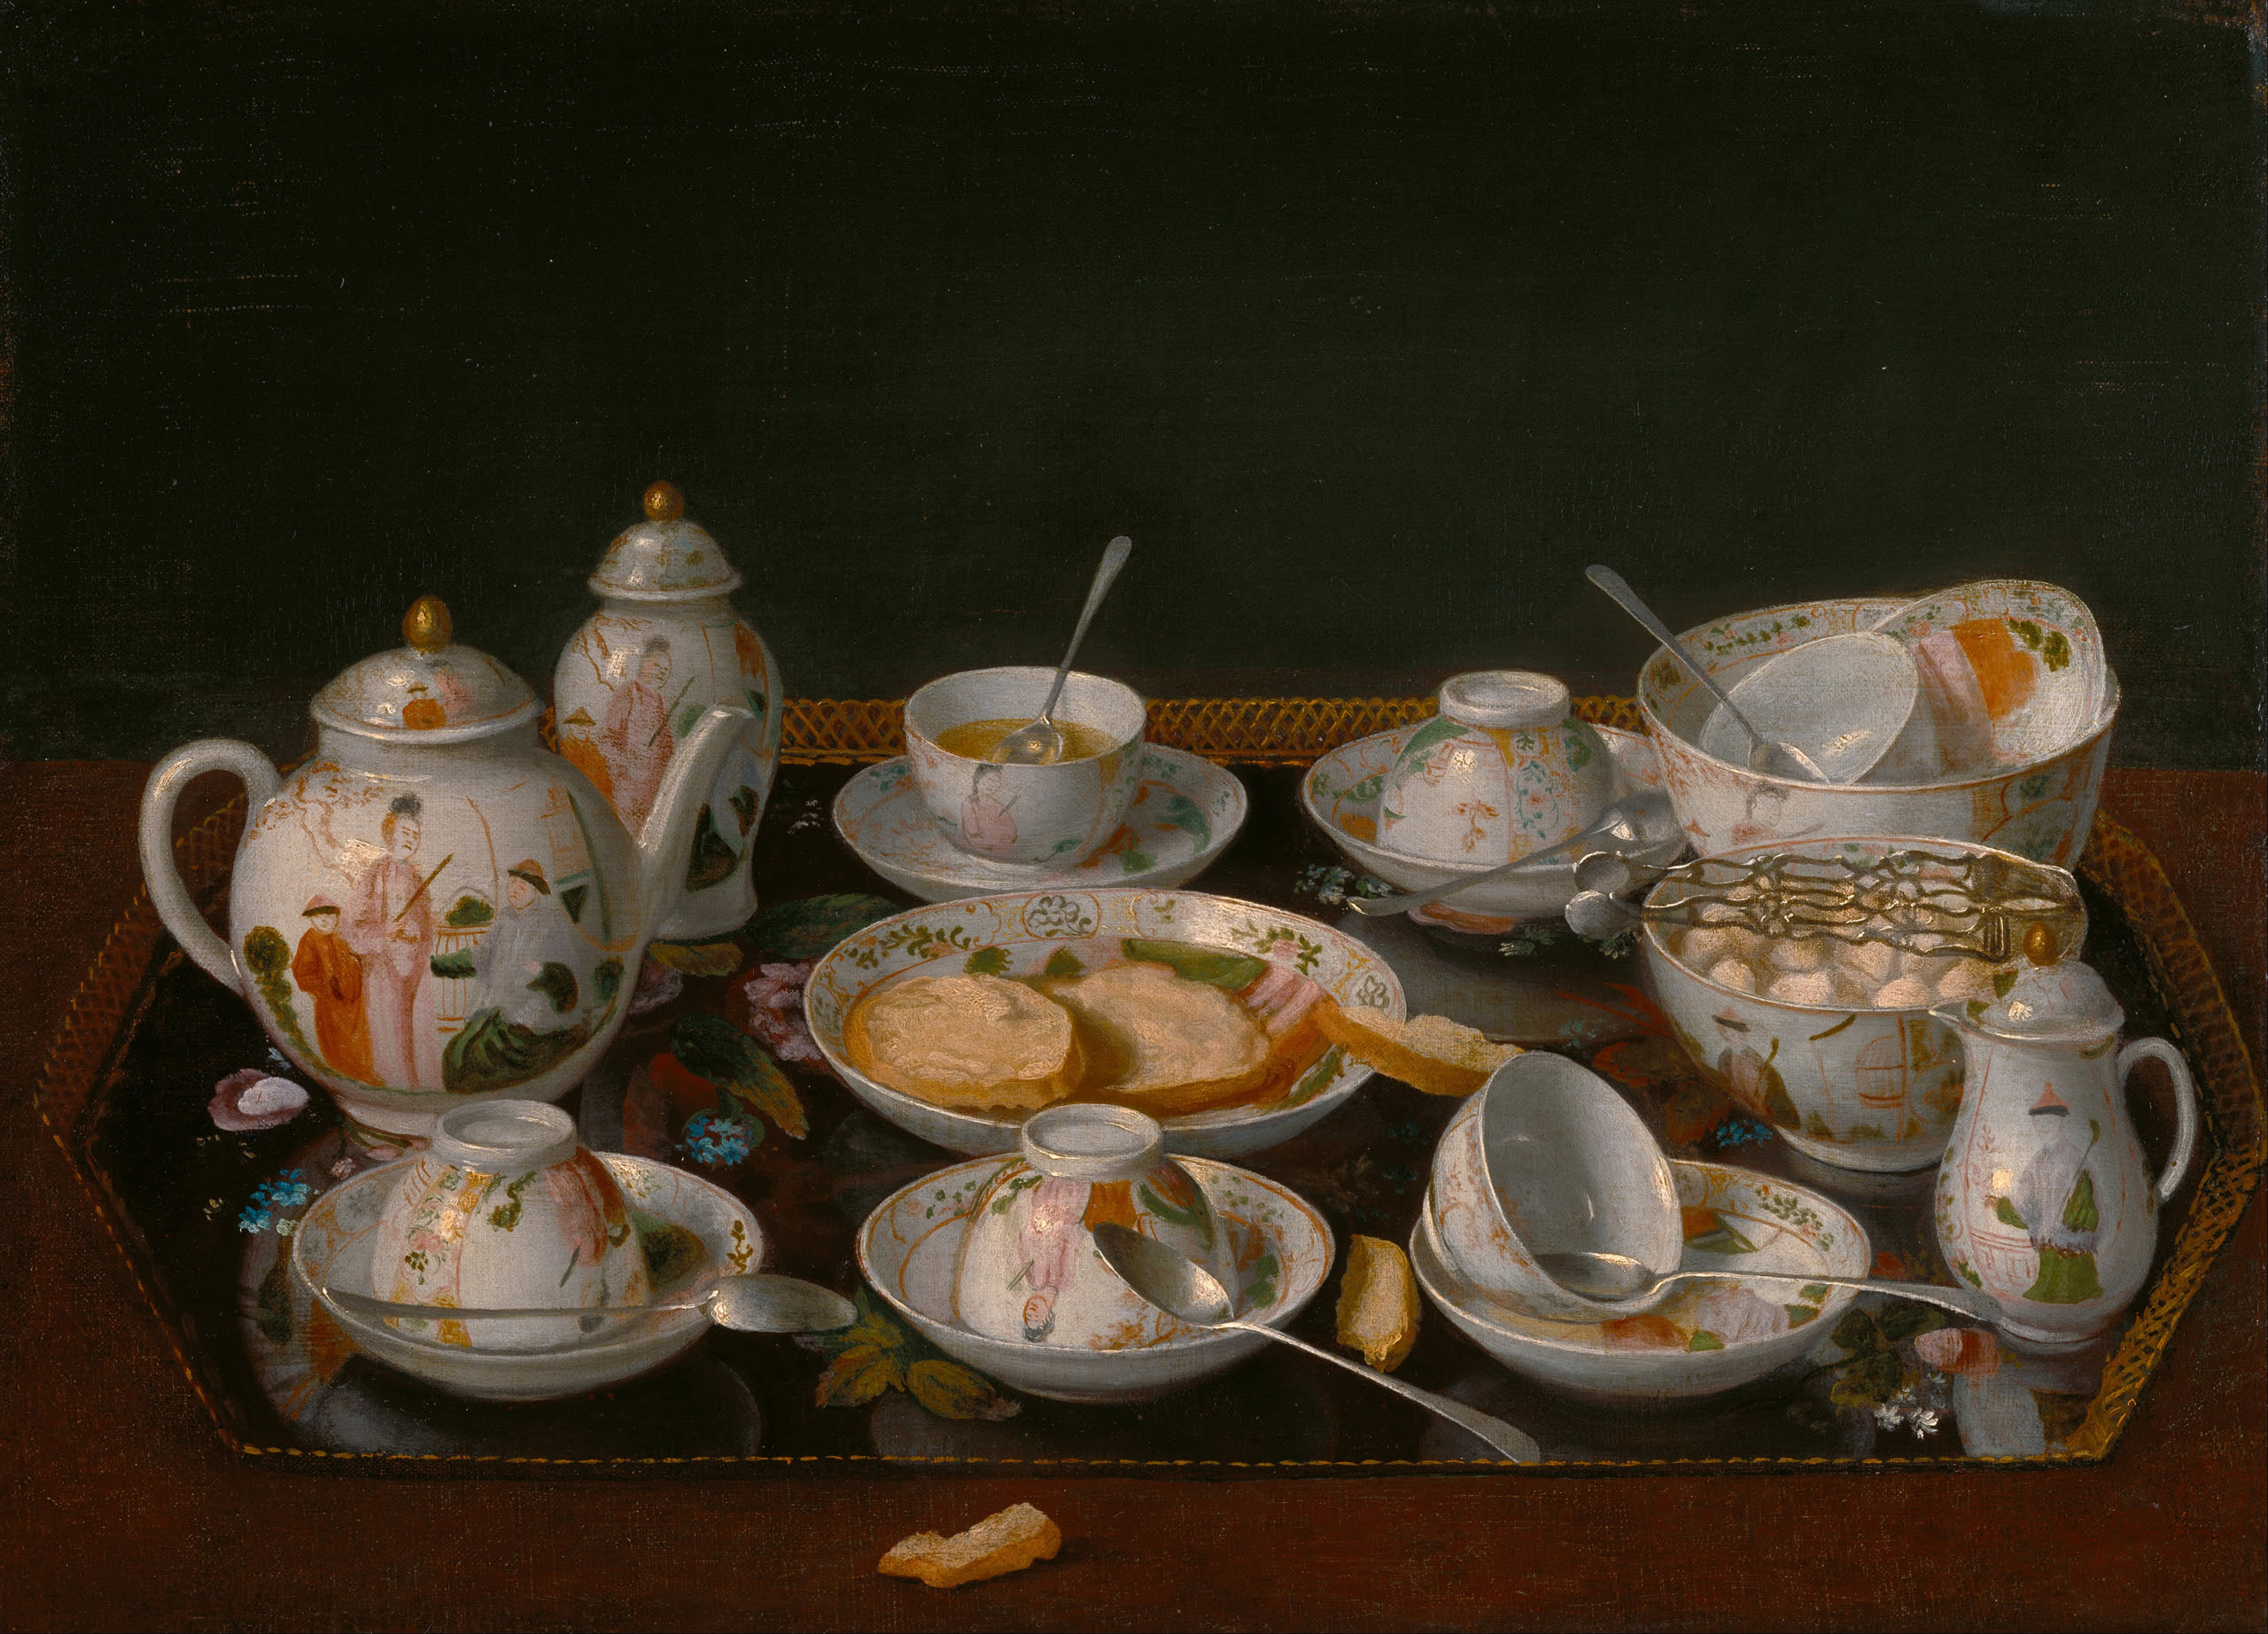 Bức tranh “Still Life: Tea Set” (Tranh tĩnh vật: Bộ dụng cụ thưởng trà), họa sỹ Jean-Étienne Liotard, khoảng năm 1781–1783. Tranh sơn dầu trên vải canvas được dán lên bảng cứng; kích thước: 14 7/8 inch x 20 5/16 inch. Getty Center, Los Angeles. (Ảnh: Tư liệu công cộng)